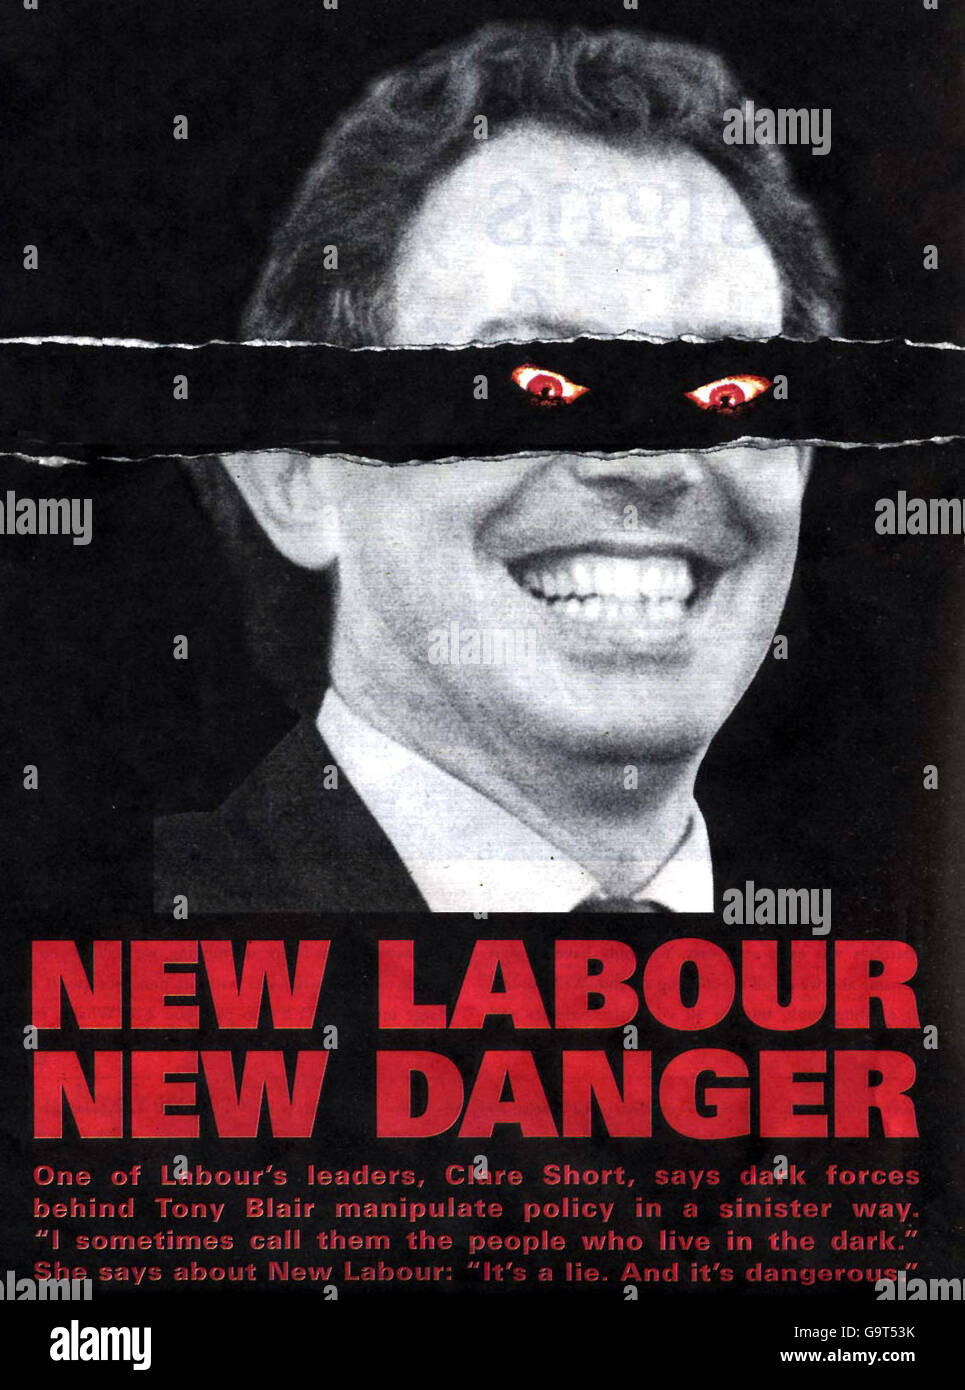 La Oficina Central conservadora desveló su último arma de campaña previa a las elecciones, un cartel que representa a Tony Blair con ojos demoníacos. Foto de stock